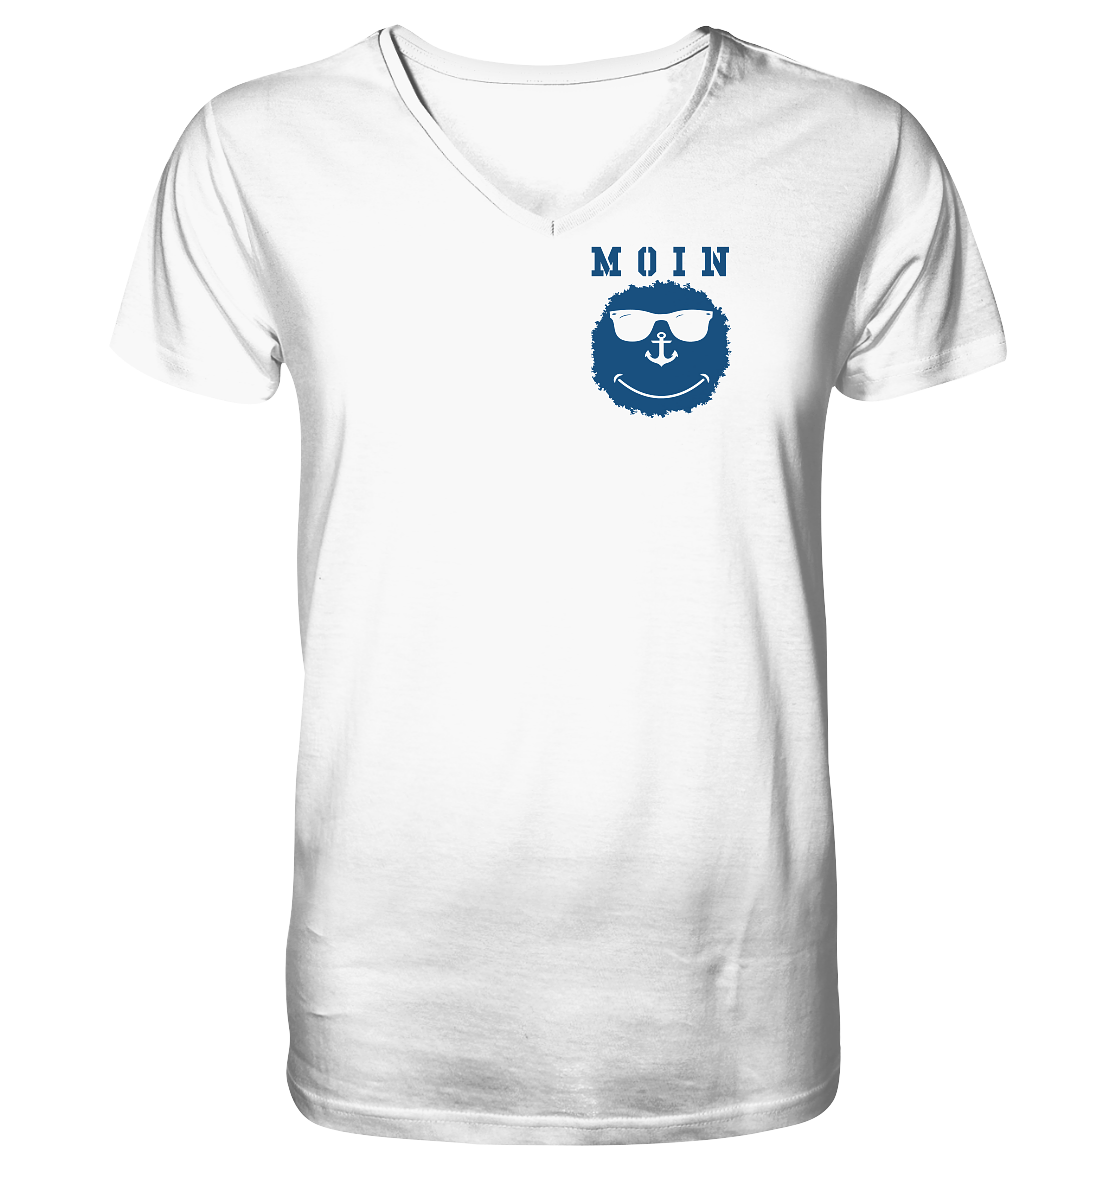 Smily MOIN - Mens Organic V-Neck Shirt